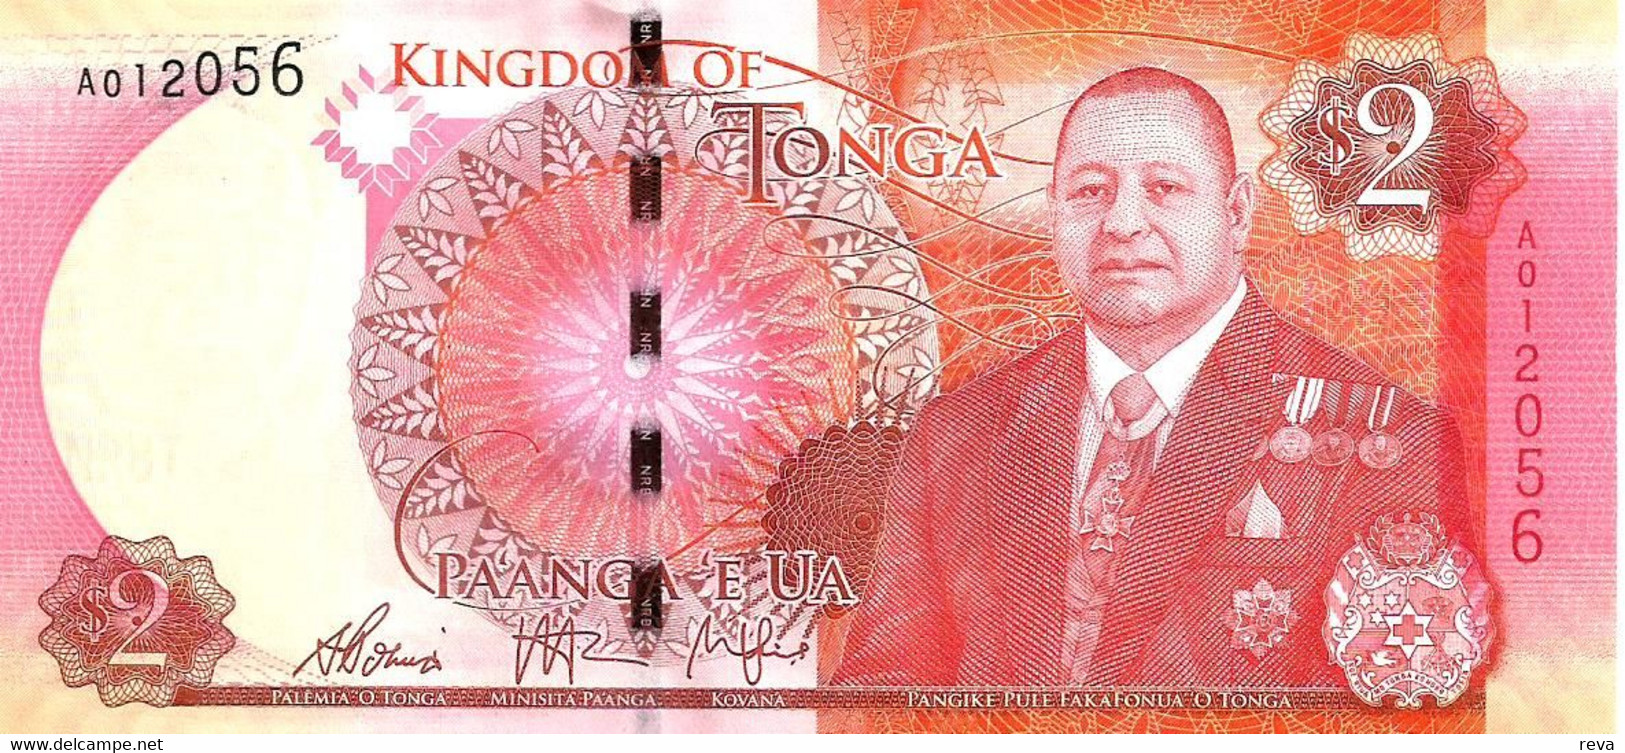 TONGA 2 PA'ANGA  RED NEW KING PORTRAIT FRONT EMBLEM BACK  ND(2015) P44 UNC READ DESCRIPTION - Tonga